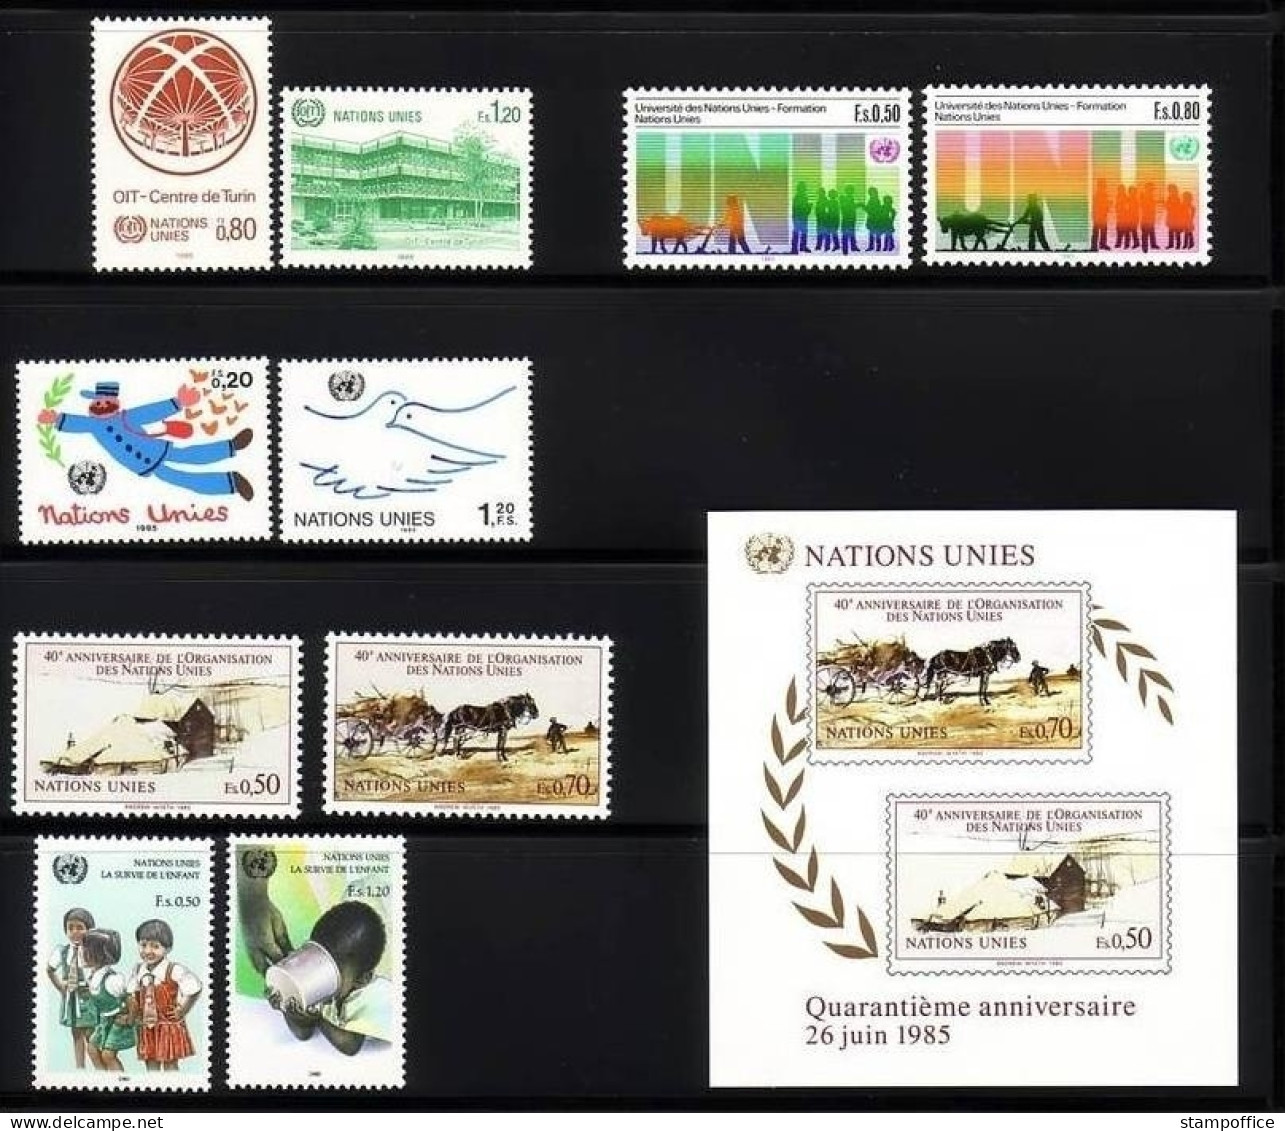 UNO GENF JAHRGANG 1985 POSTFRISCH MIT BLOCK 3 - Unused Stamps